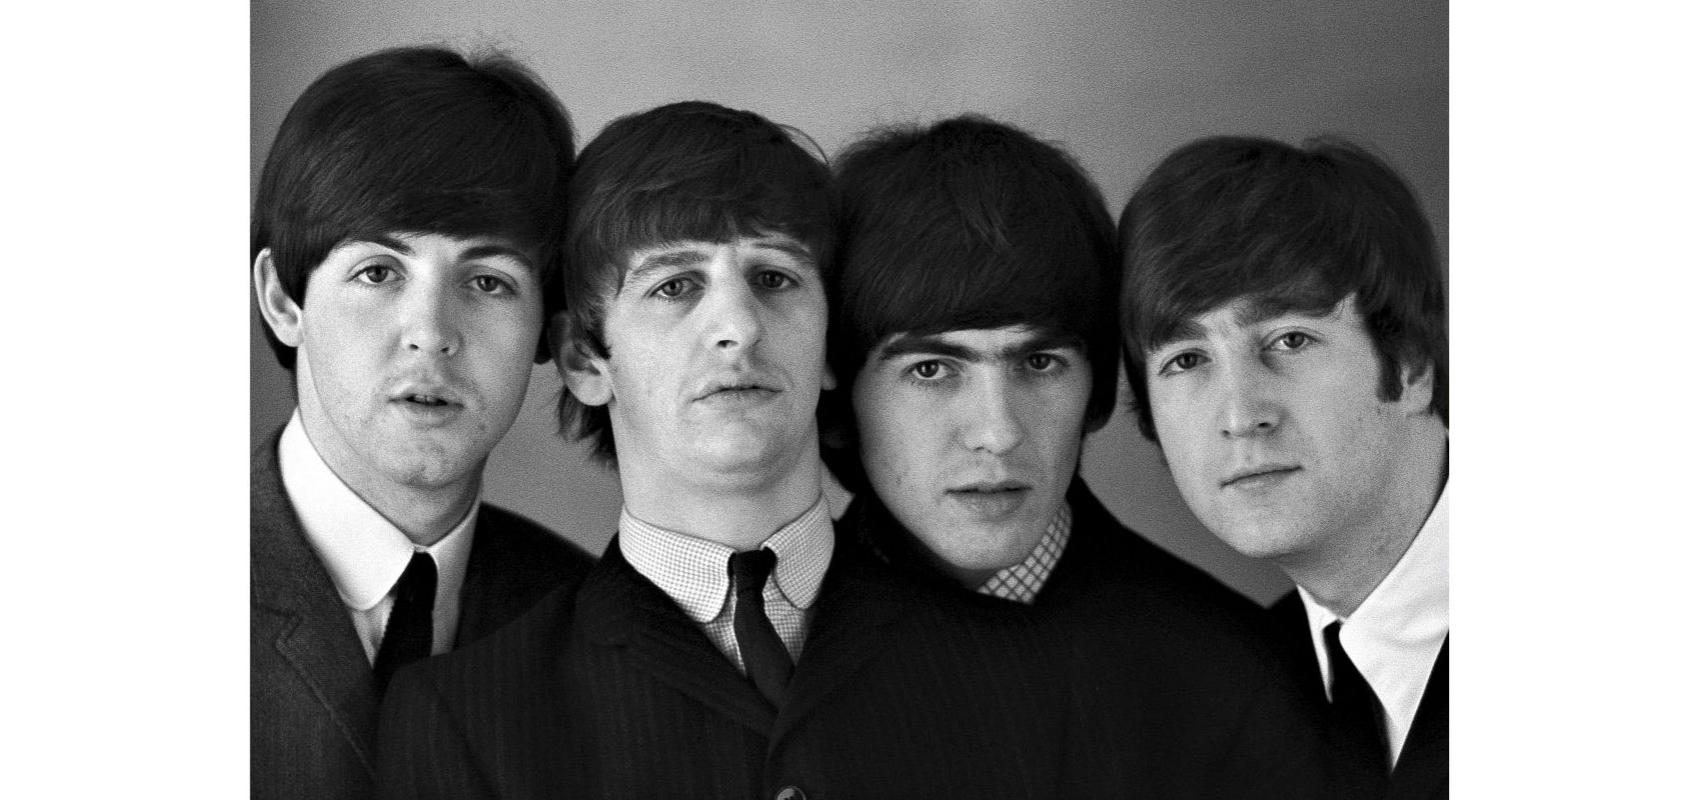 Les Beatles portrait N&B, Paris - Janvier 1964 - © Photo : Jean-Marie Périer